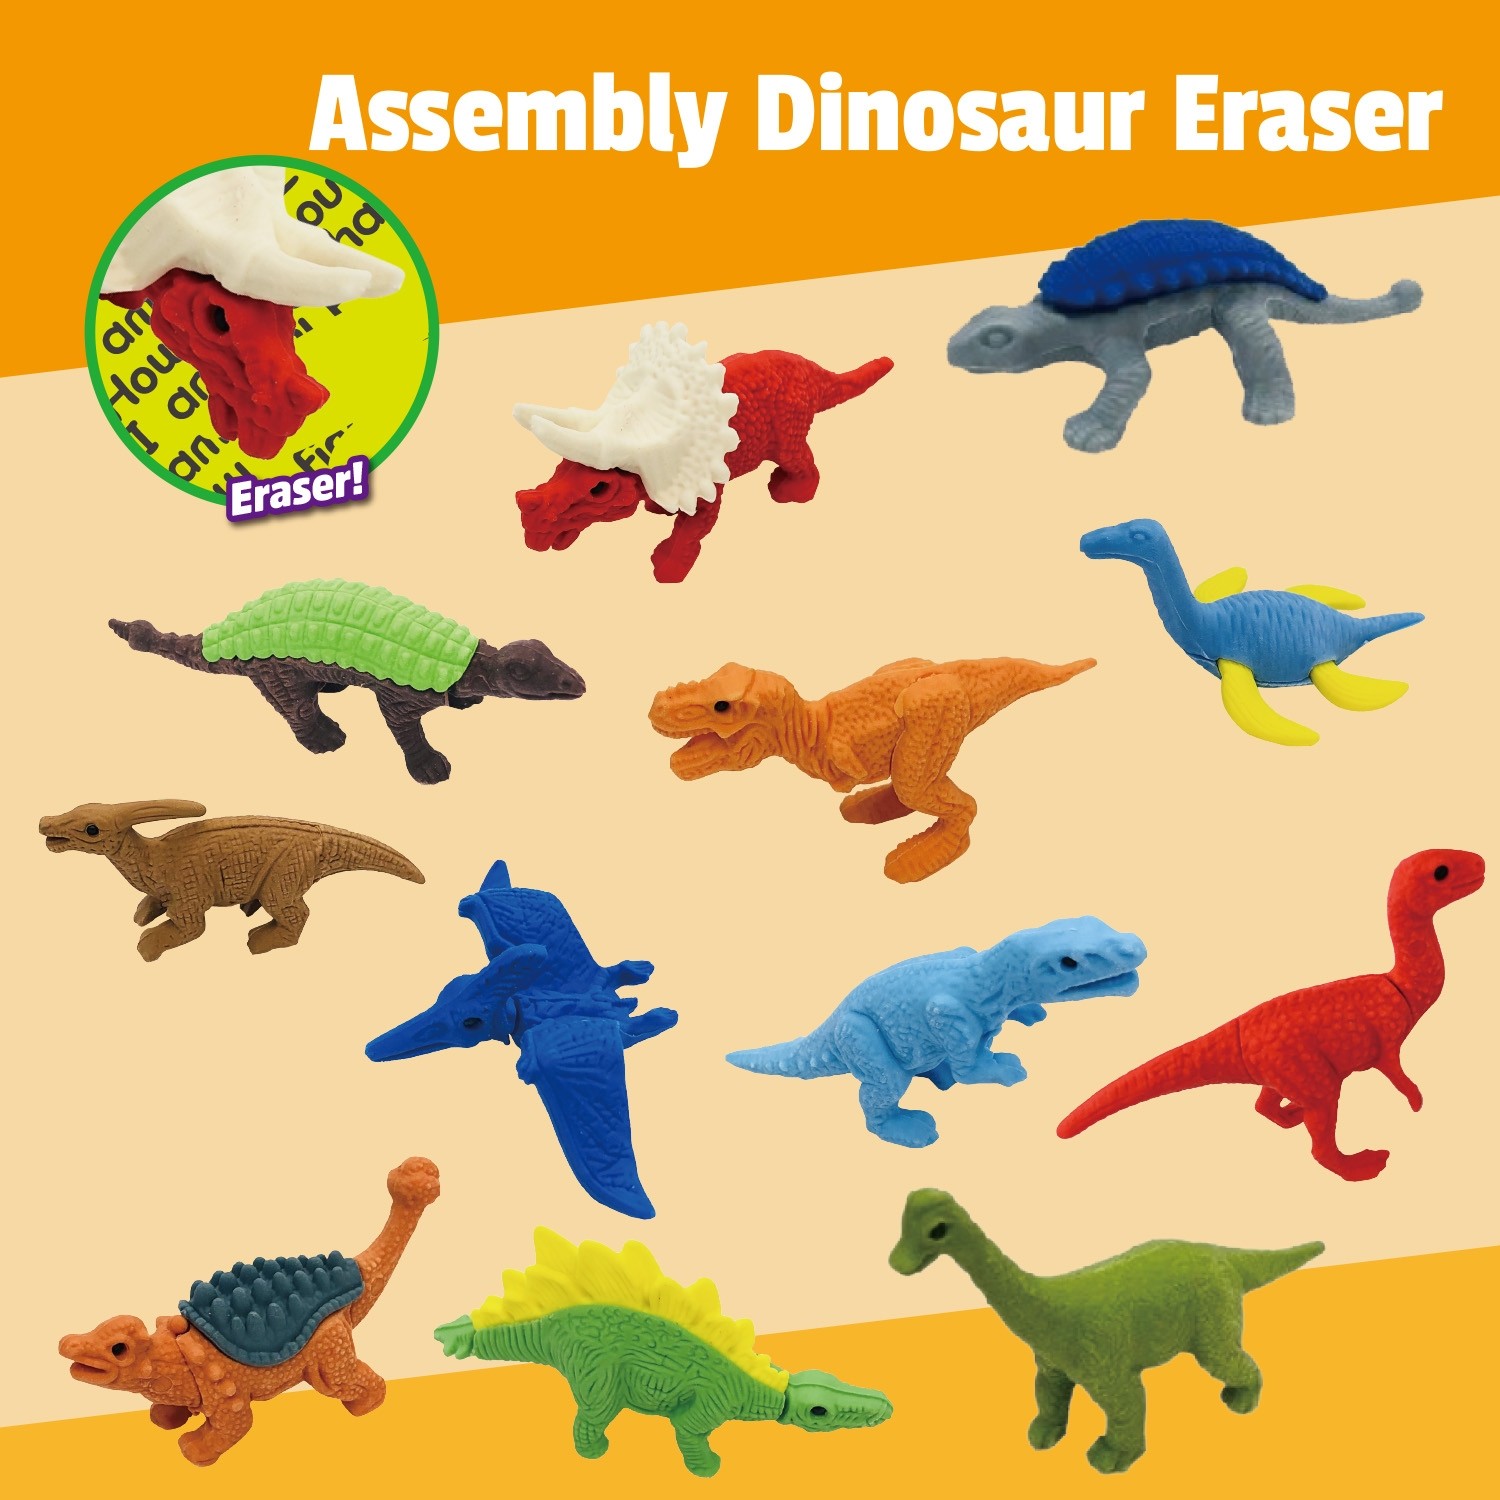 Assembly Dinosaur Eraser